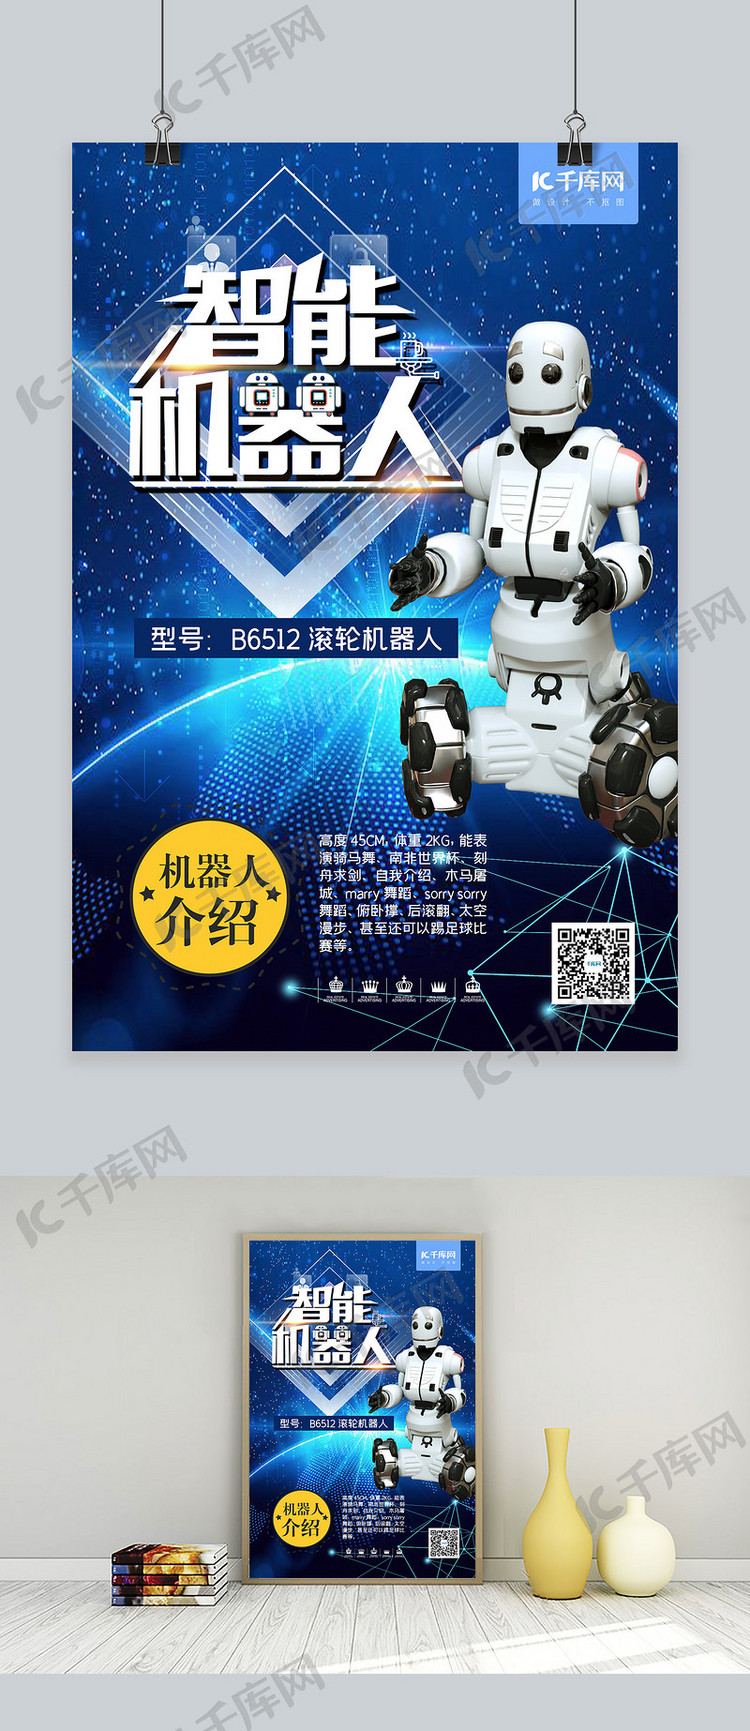 智能机器人产品发布机器展示蓝色科技海报